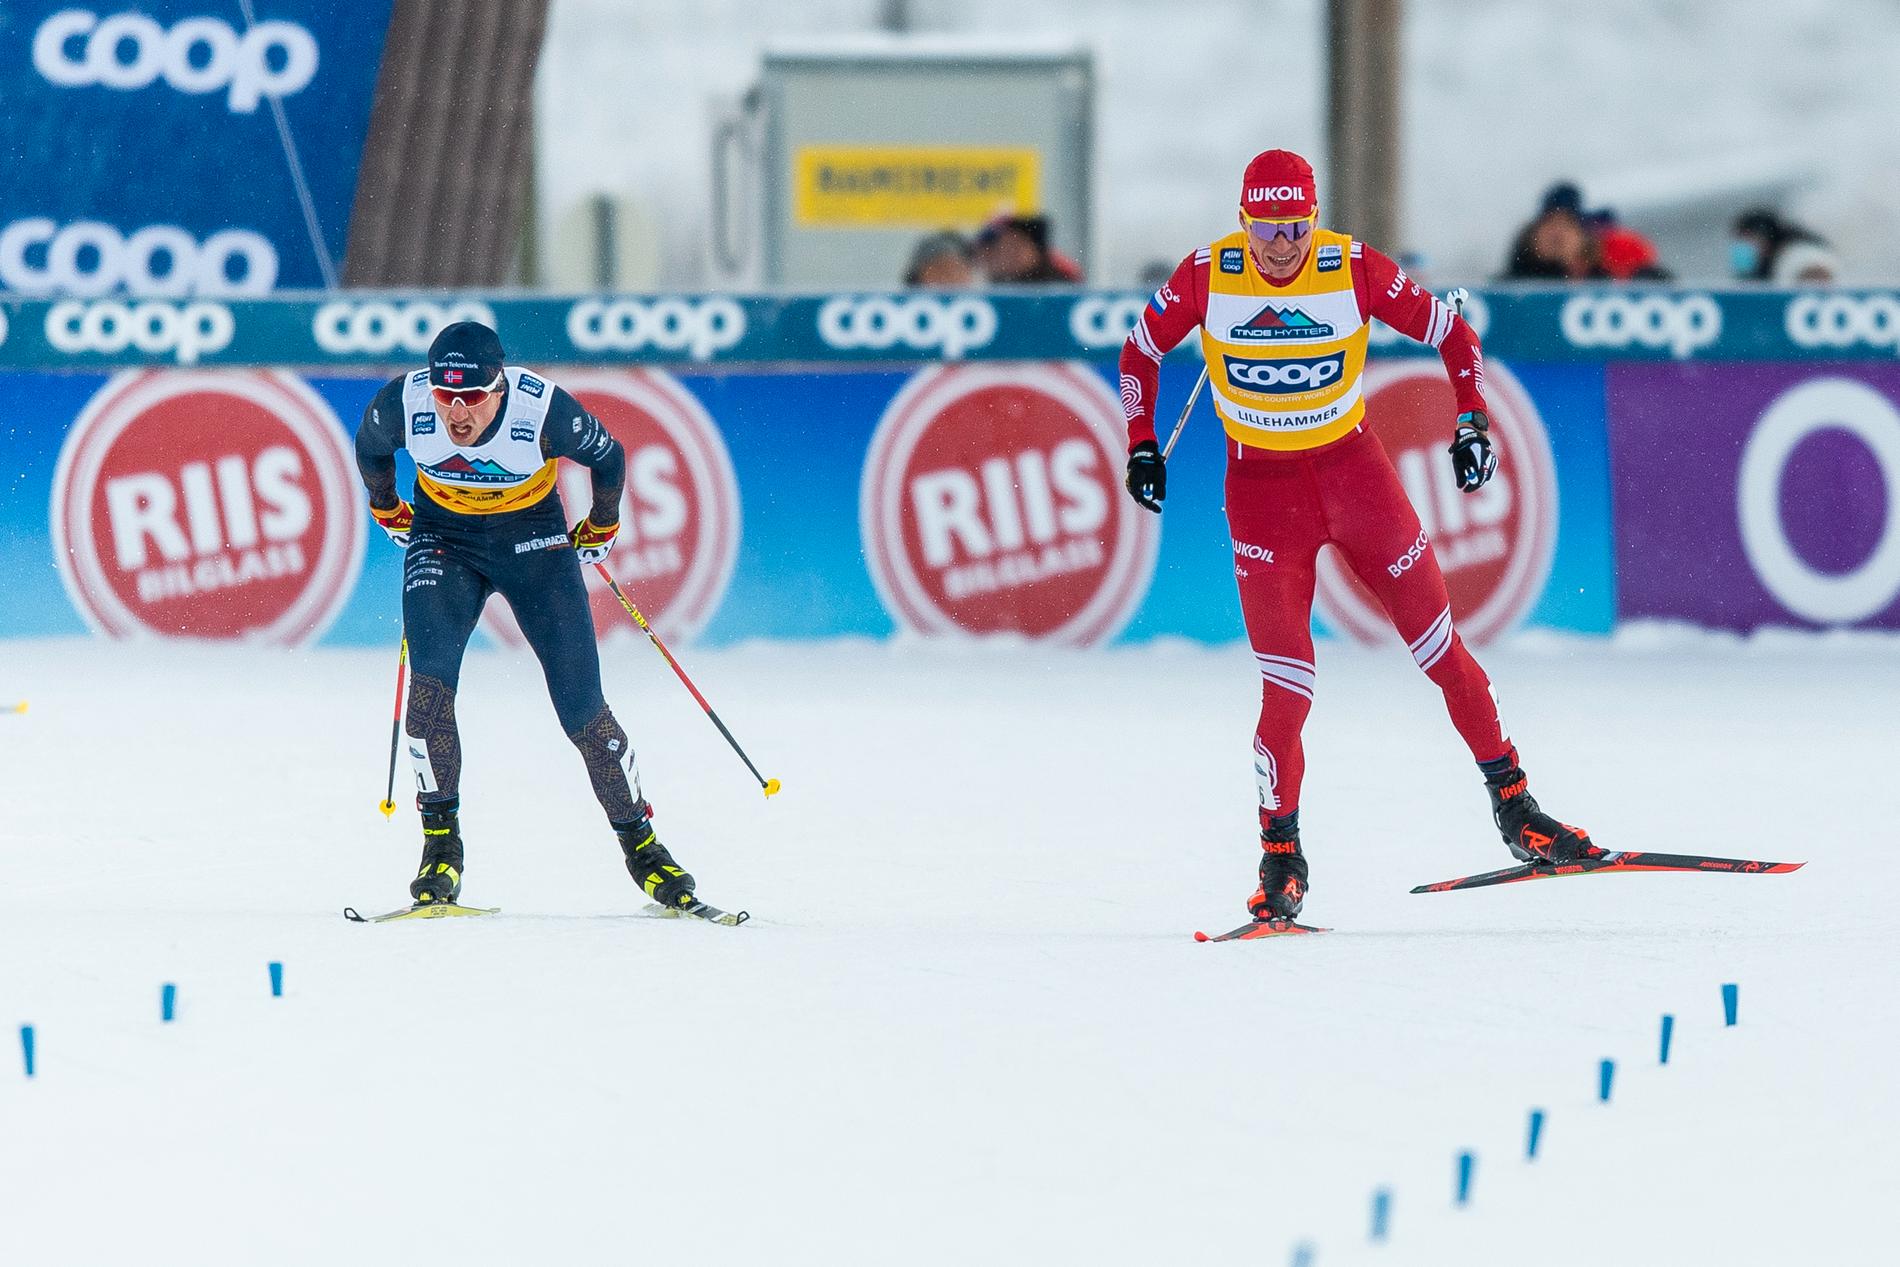 Ryske åkaren Alexander Bolsjunov kan tvingas åka med Ukrainas färger på bröstet under världscuptävlingarna i Norge.